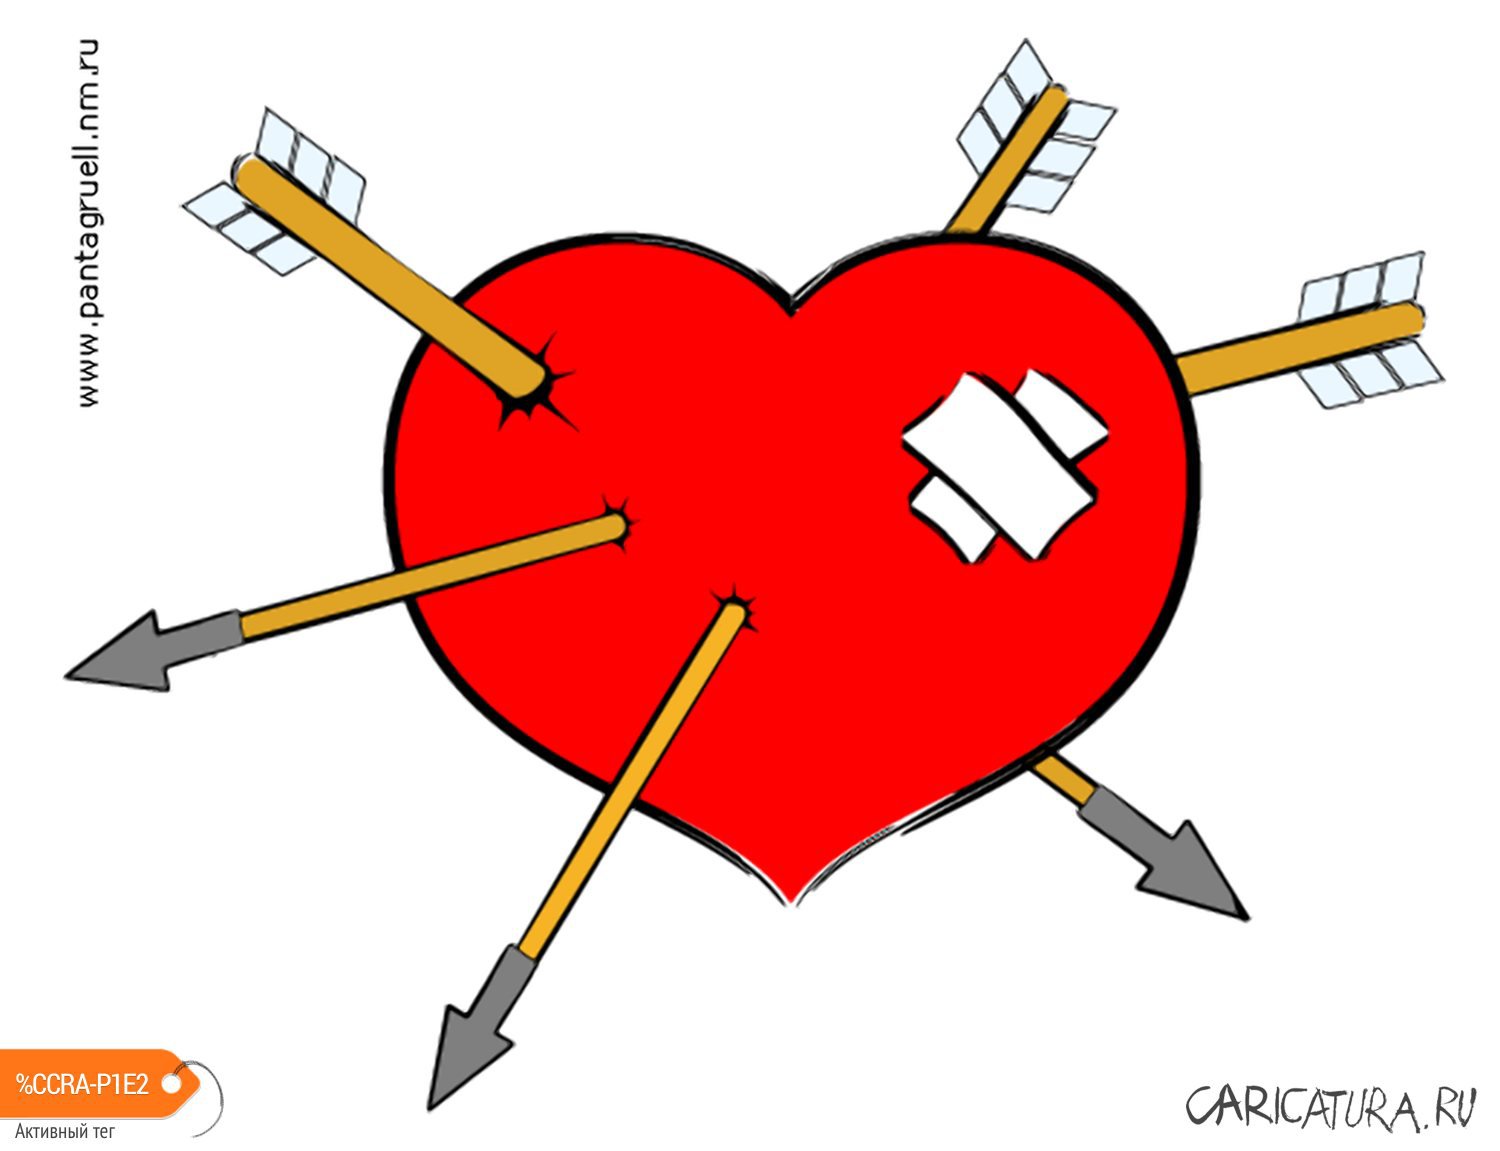 Карикатура "Влюблённое сердце", Пантагрюэль